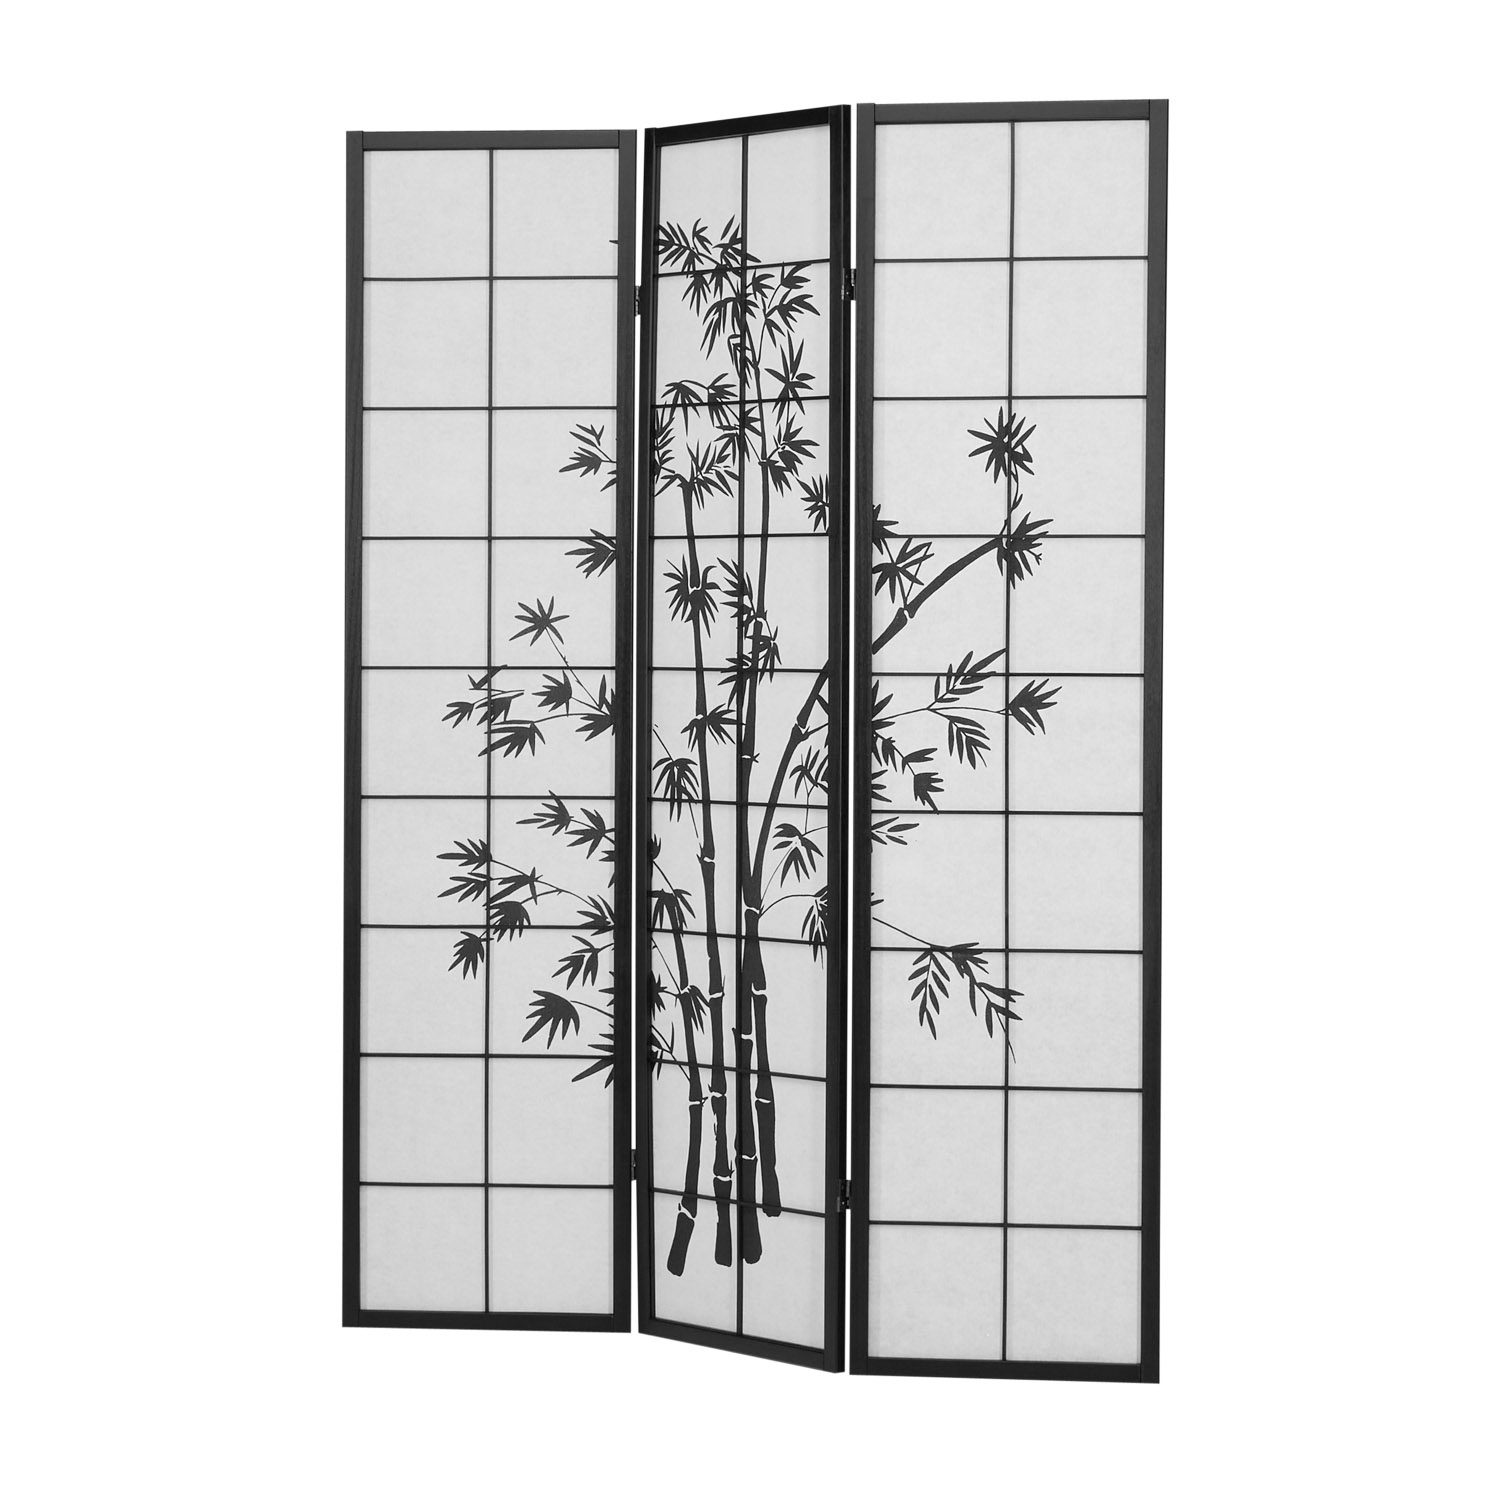 Paravent Raumteiler 3 teilig, Holz Schwarz, Reispapier Weiß, Bambusmuster, Höhe 179 cm	